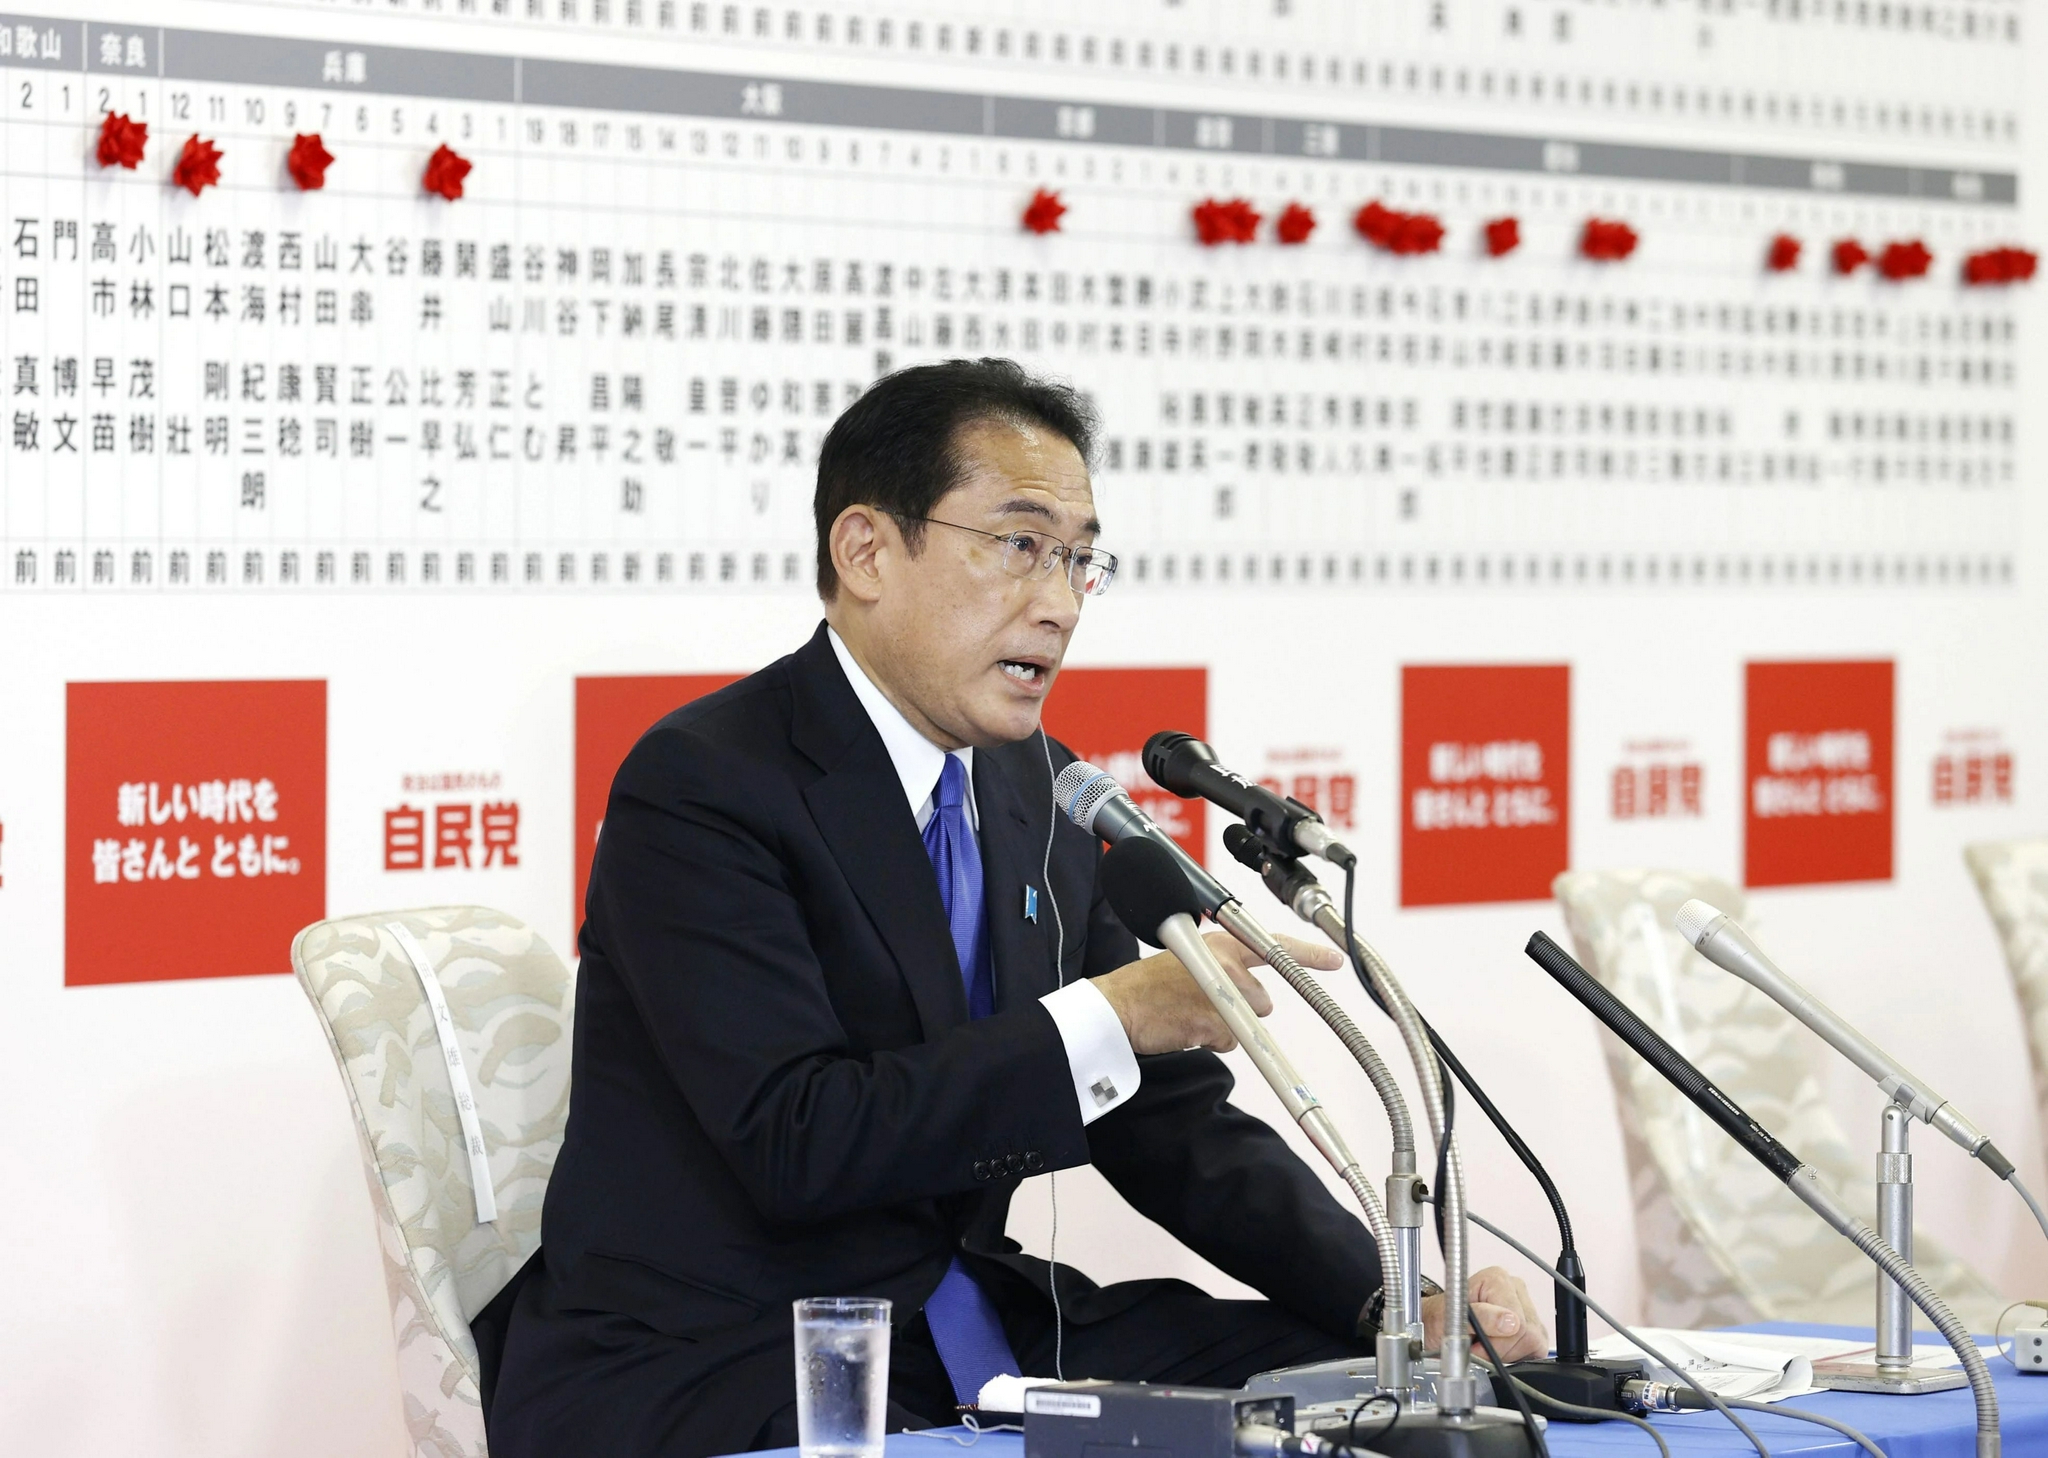 ▲10月31日	，日本首相、自民党总裁岸田文雄在位于东京的自民党总部接受采访	。图/新华社